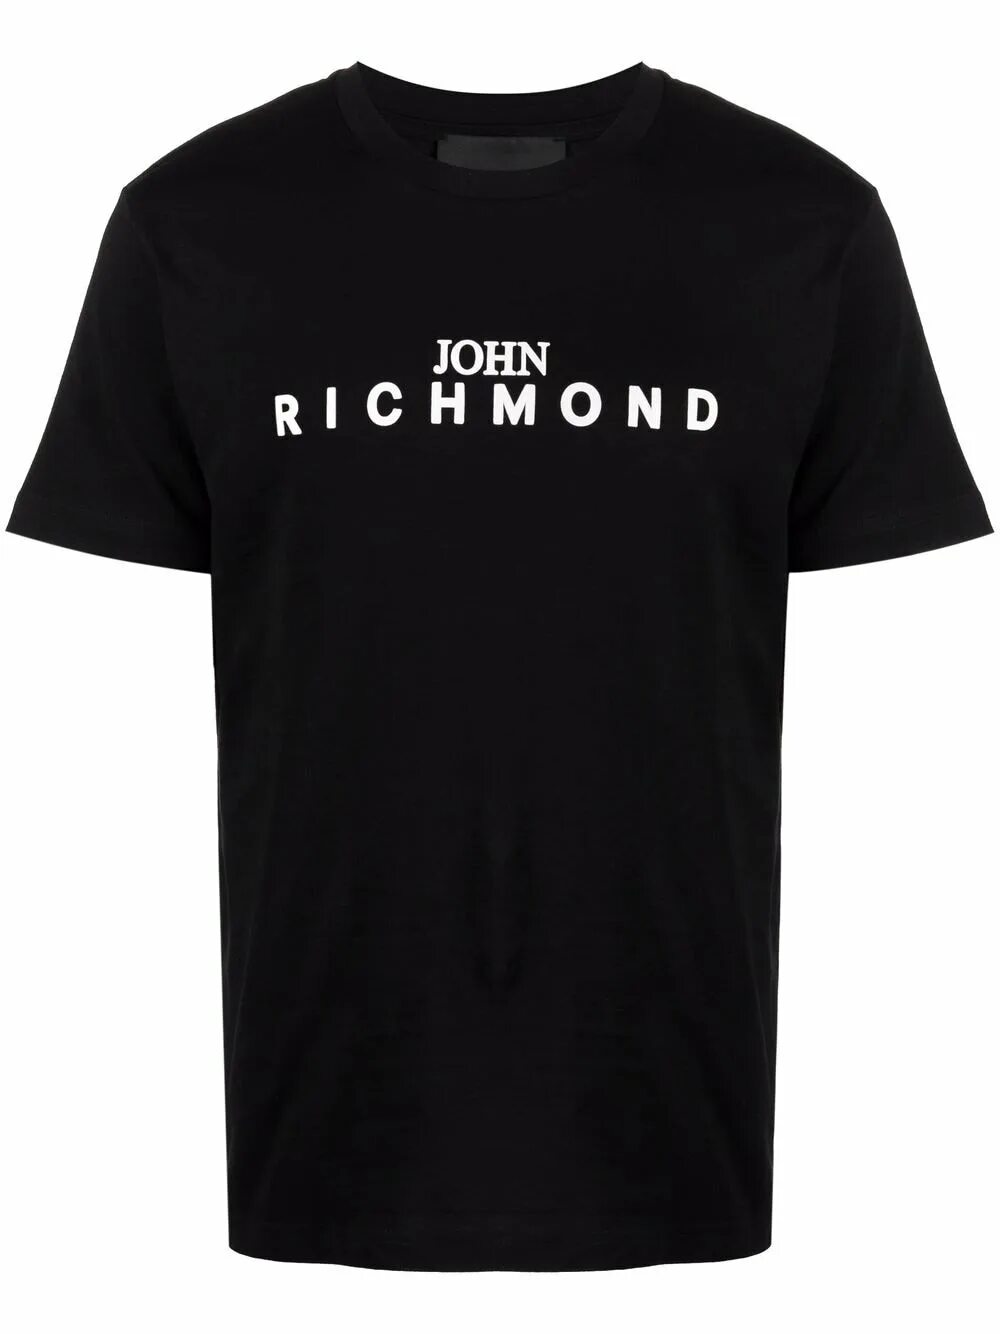 Джон ричмонд мужские. John Richmond футболка. Джон Ричмонд футболка мужская. John Richmond футболка с логотипом. John Richmond logo футболка мужская.